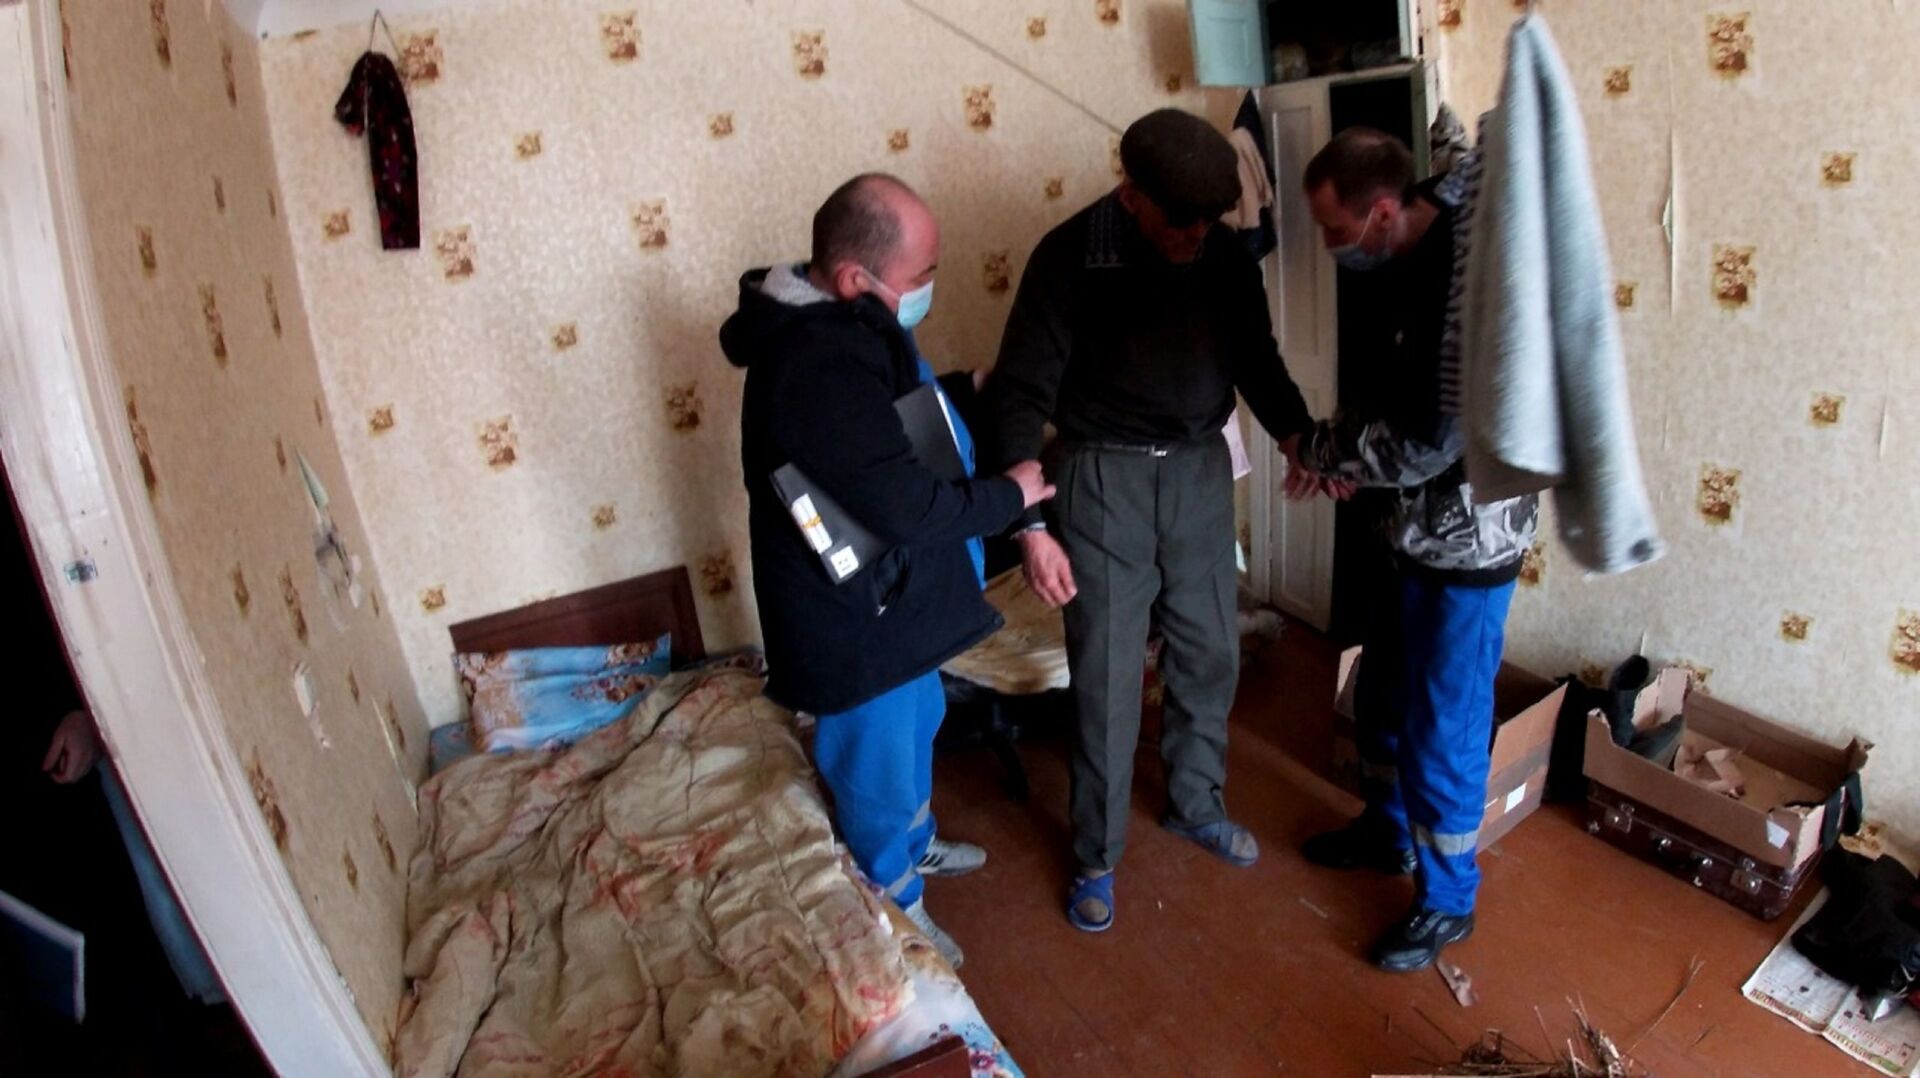 Разжечь костер в квартире пытался психически больной житель Кокшетау - Sputnik Казахстан, 1920, 28.04.2021